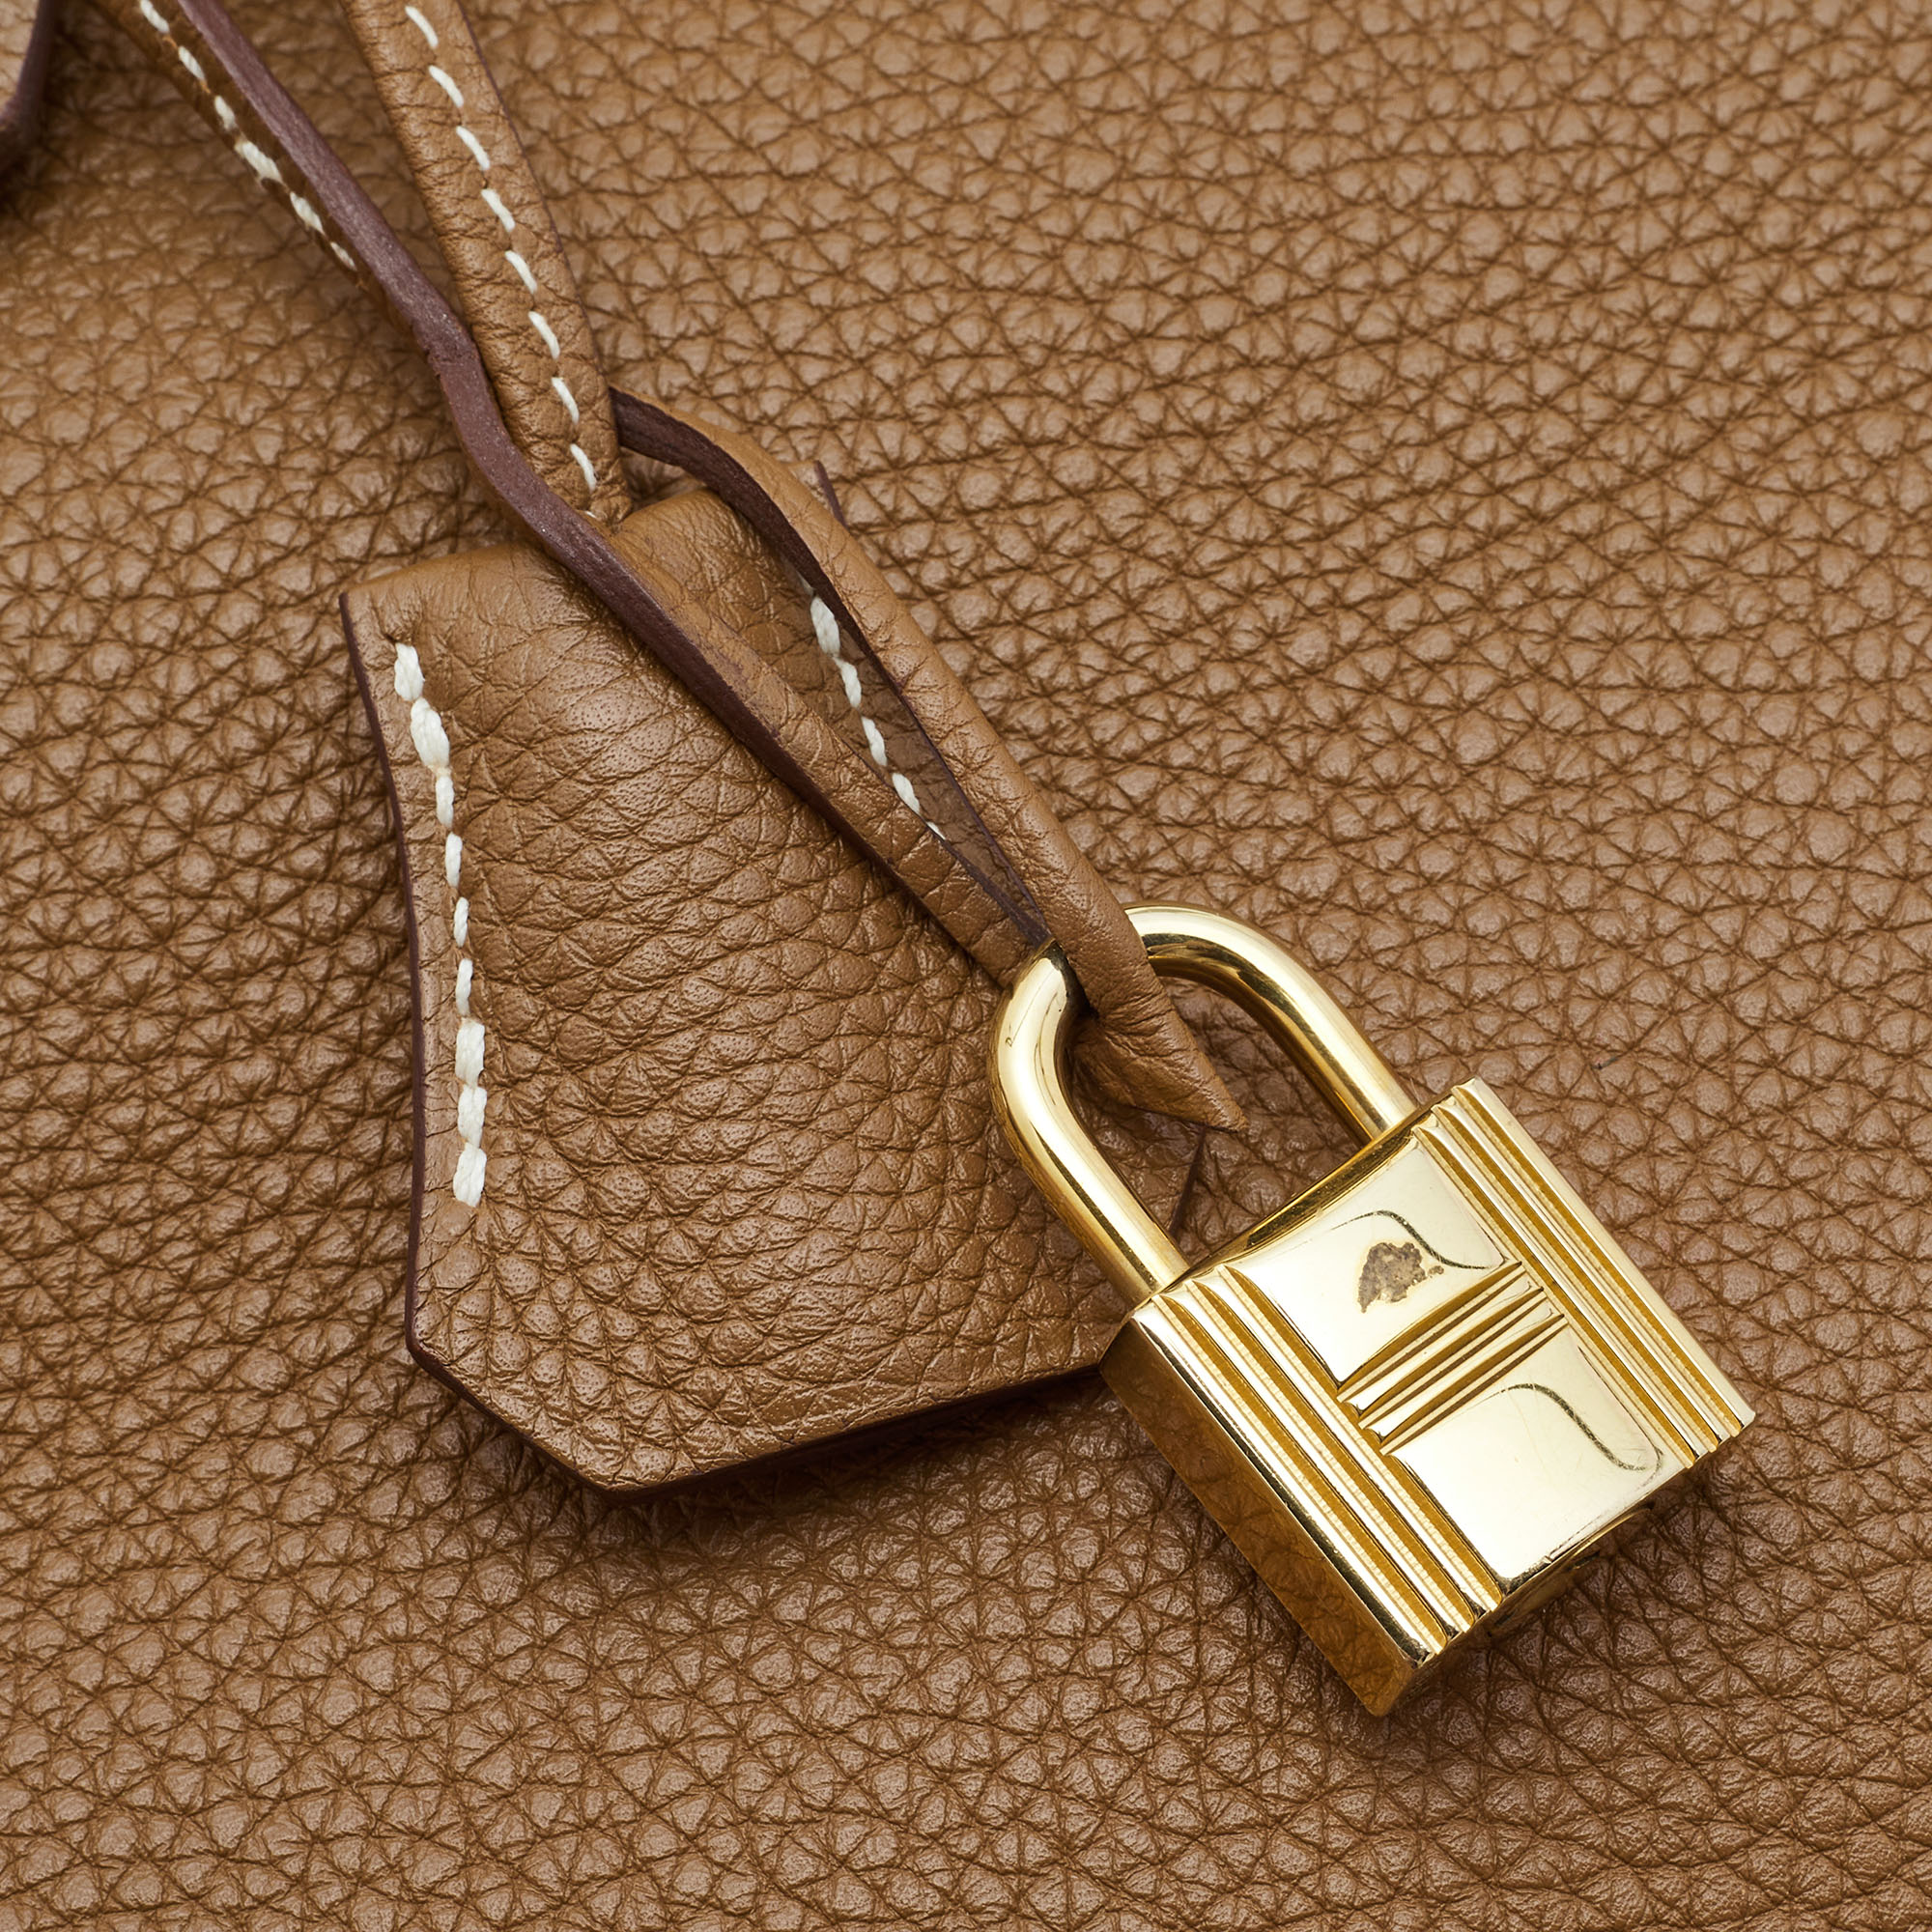 Hermes Gold Togo Leather Gold Finish Birkin 35 Bag